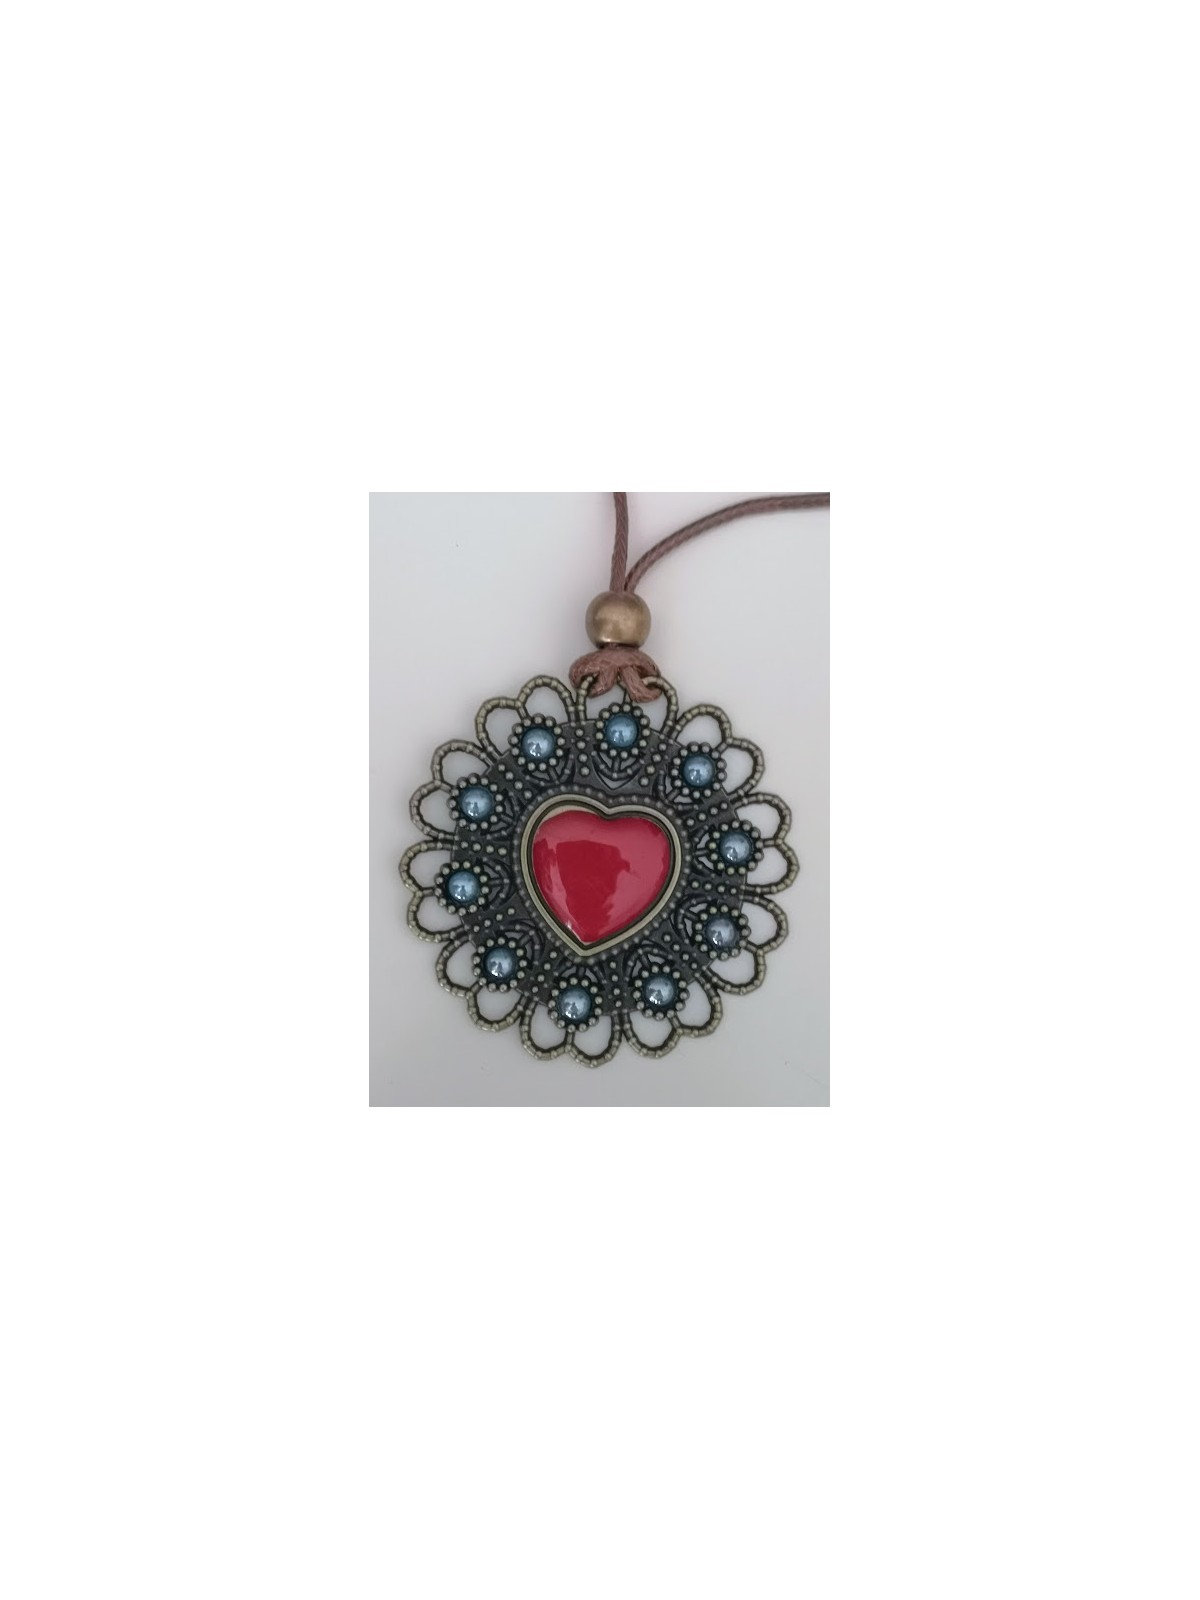 Sautoir pendentif coeur et perles bleues et rouges l 2 vue rapprochée l Tilleulmenthe mode boutique de vêtements femme en ligne